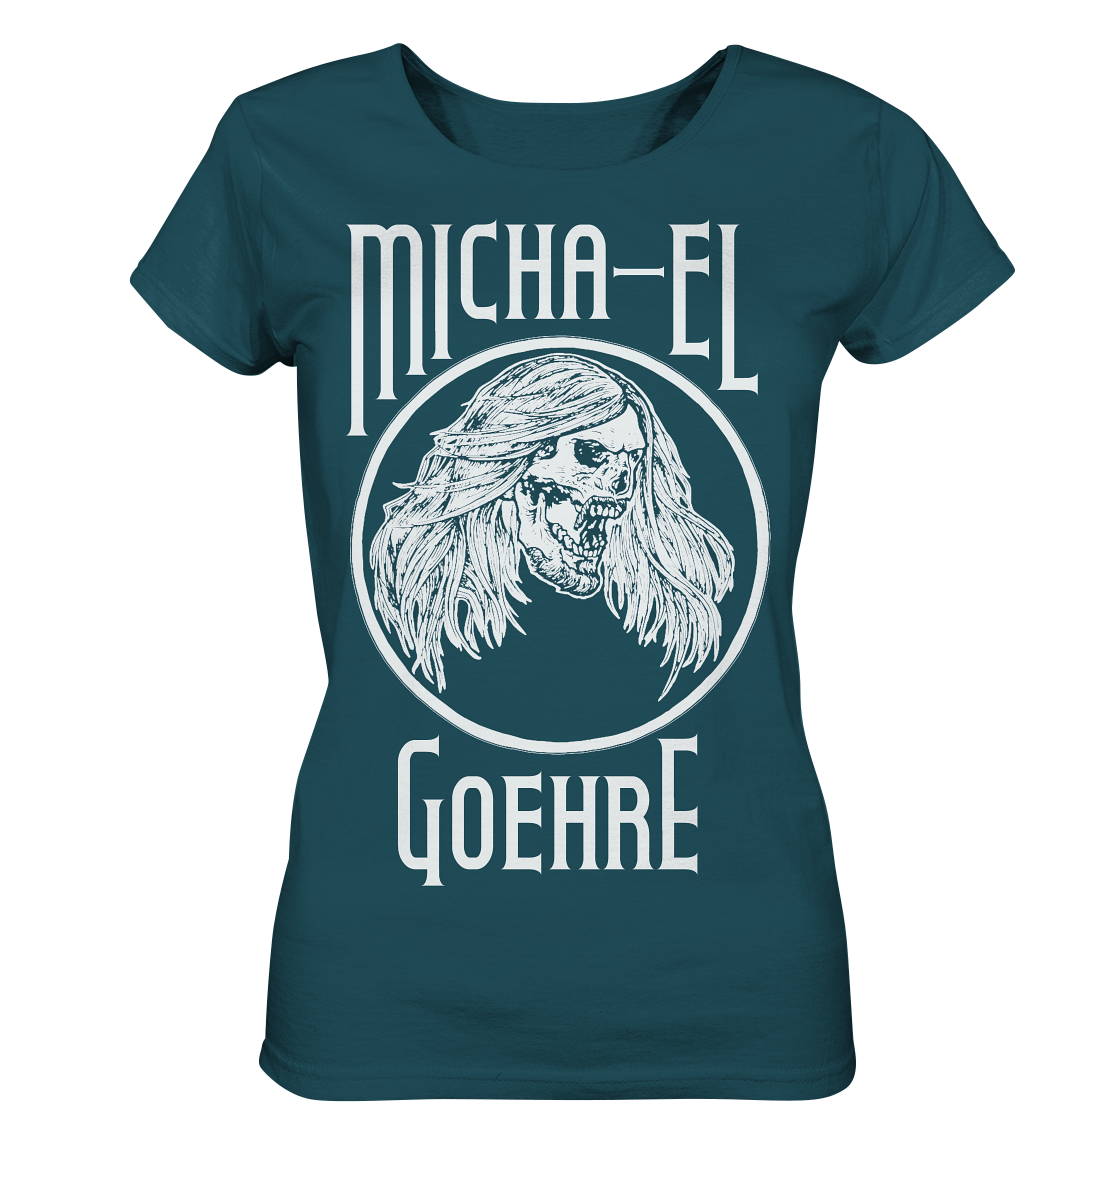 Artbookings - Micha-El Goehre - offizielles Fan-Shirt - Bio-T-Shirt - weiblicher Schnitt mit Poetry-Slam-Merchandise und Kunstdrucken.